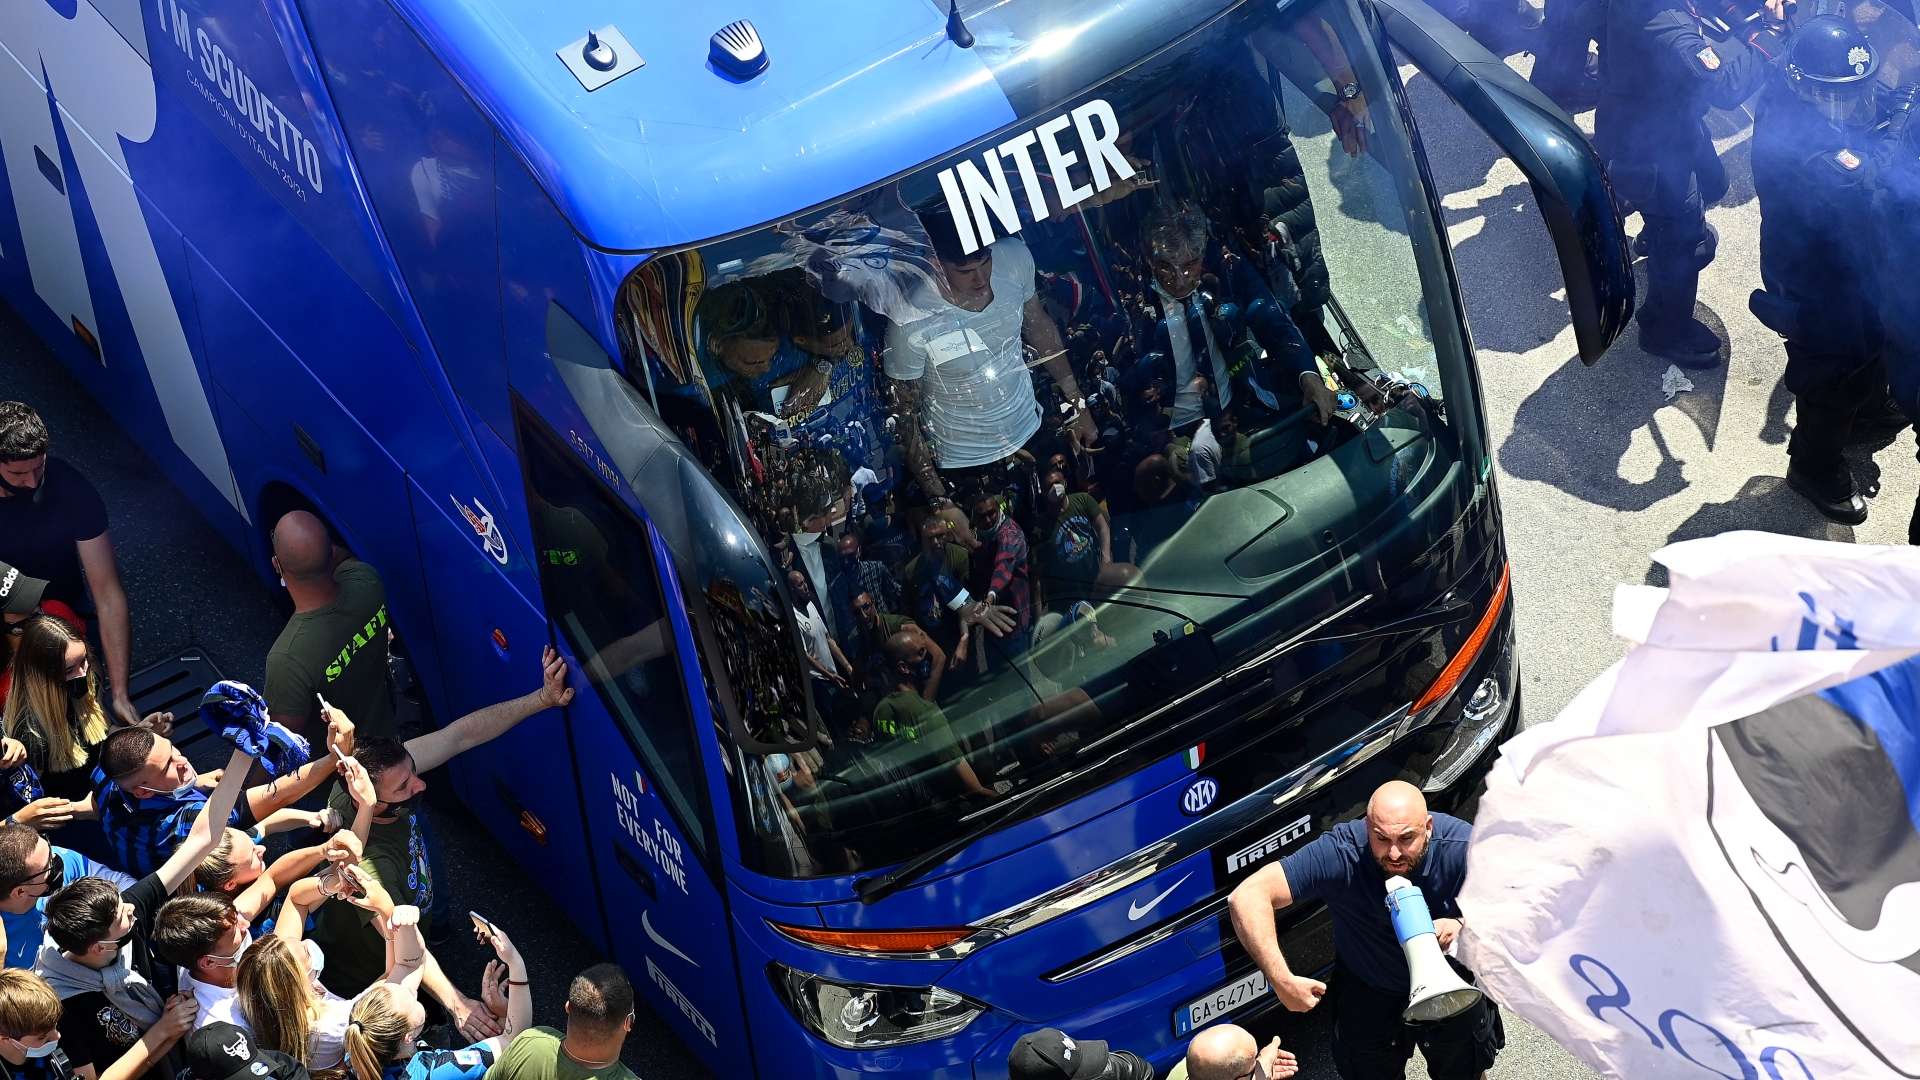 Inter fans autobus